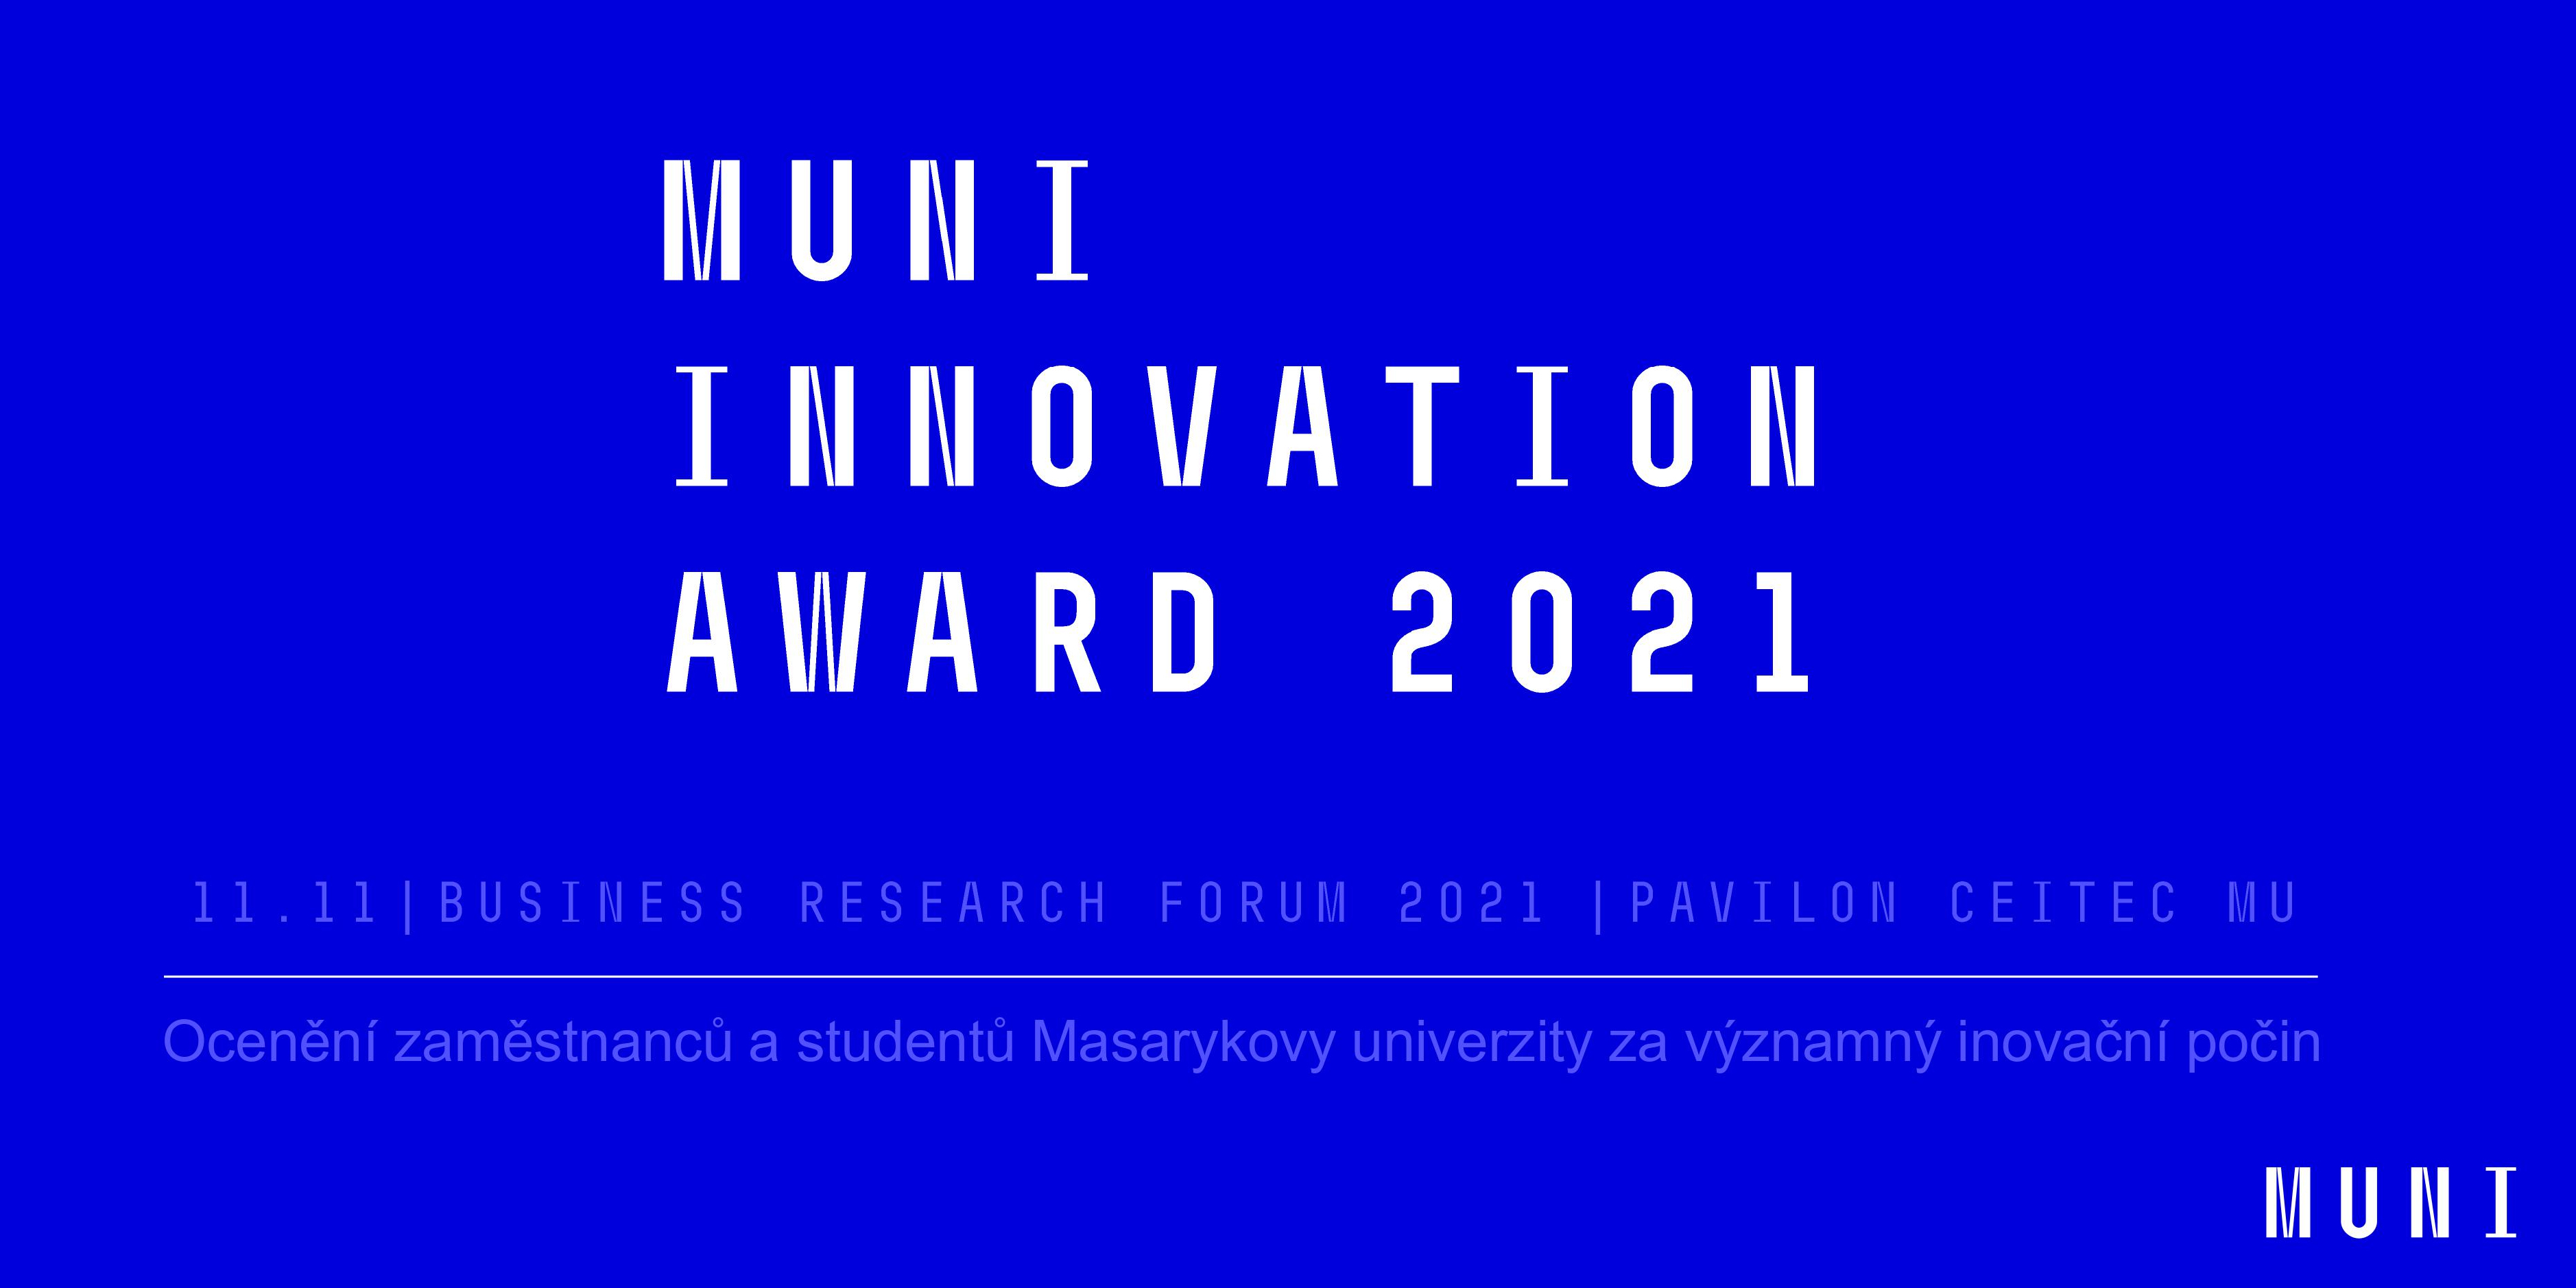 Čtyři ocenění v rámci nových MUNI Innovation Awards putují zástupcům Fakulty informatiky MU. Gratulujeme!